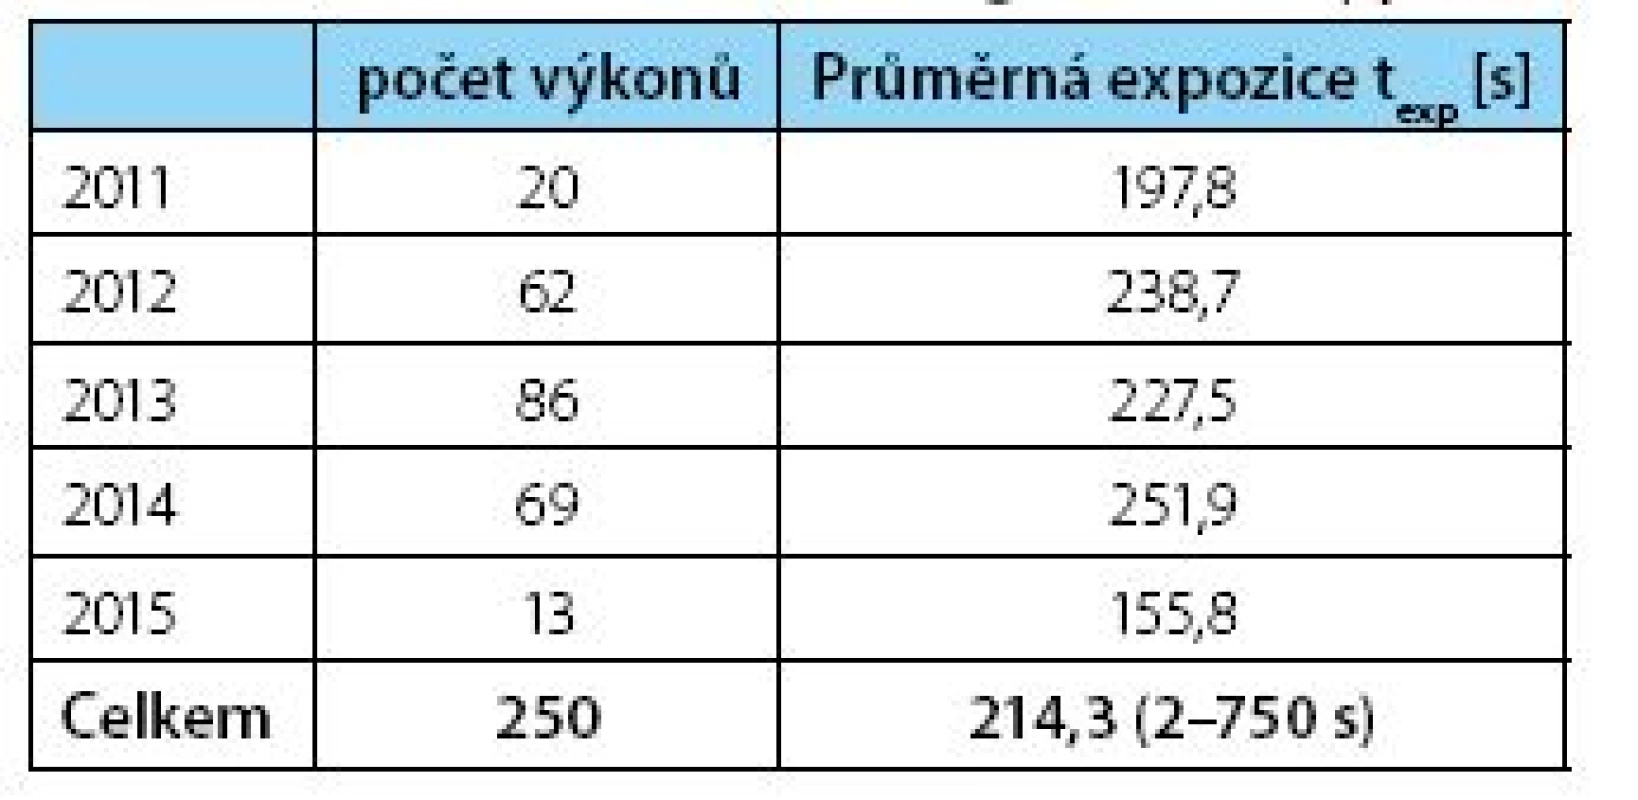 Počet PNL, průměrný čas skiaskopie
Table 3. Number of PNL, Average fluoroscopy time